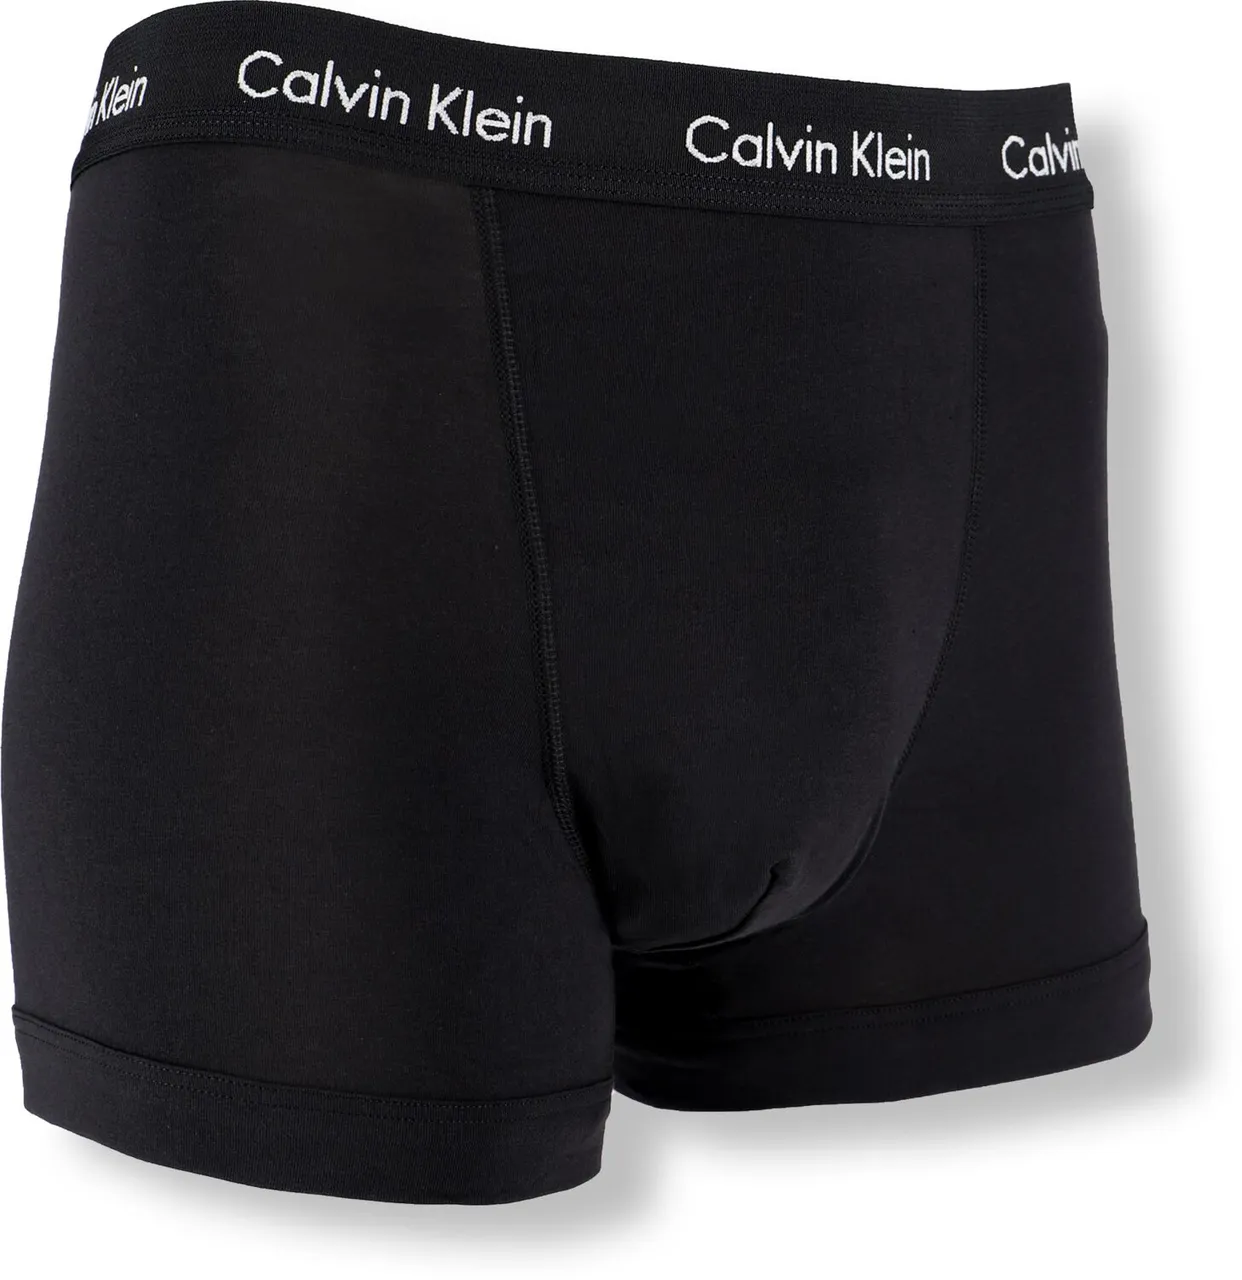 CALVIN KLEIN UNDERWEAR Heren Boxershorts 3-pack Trunks - Multi